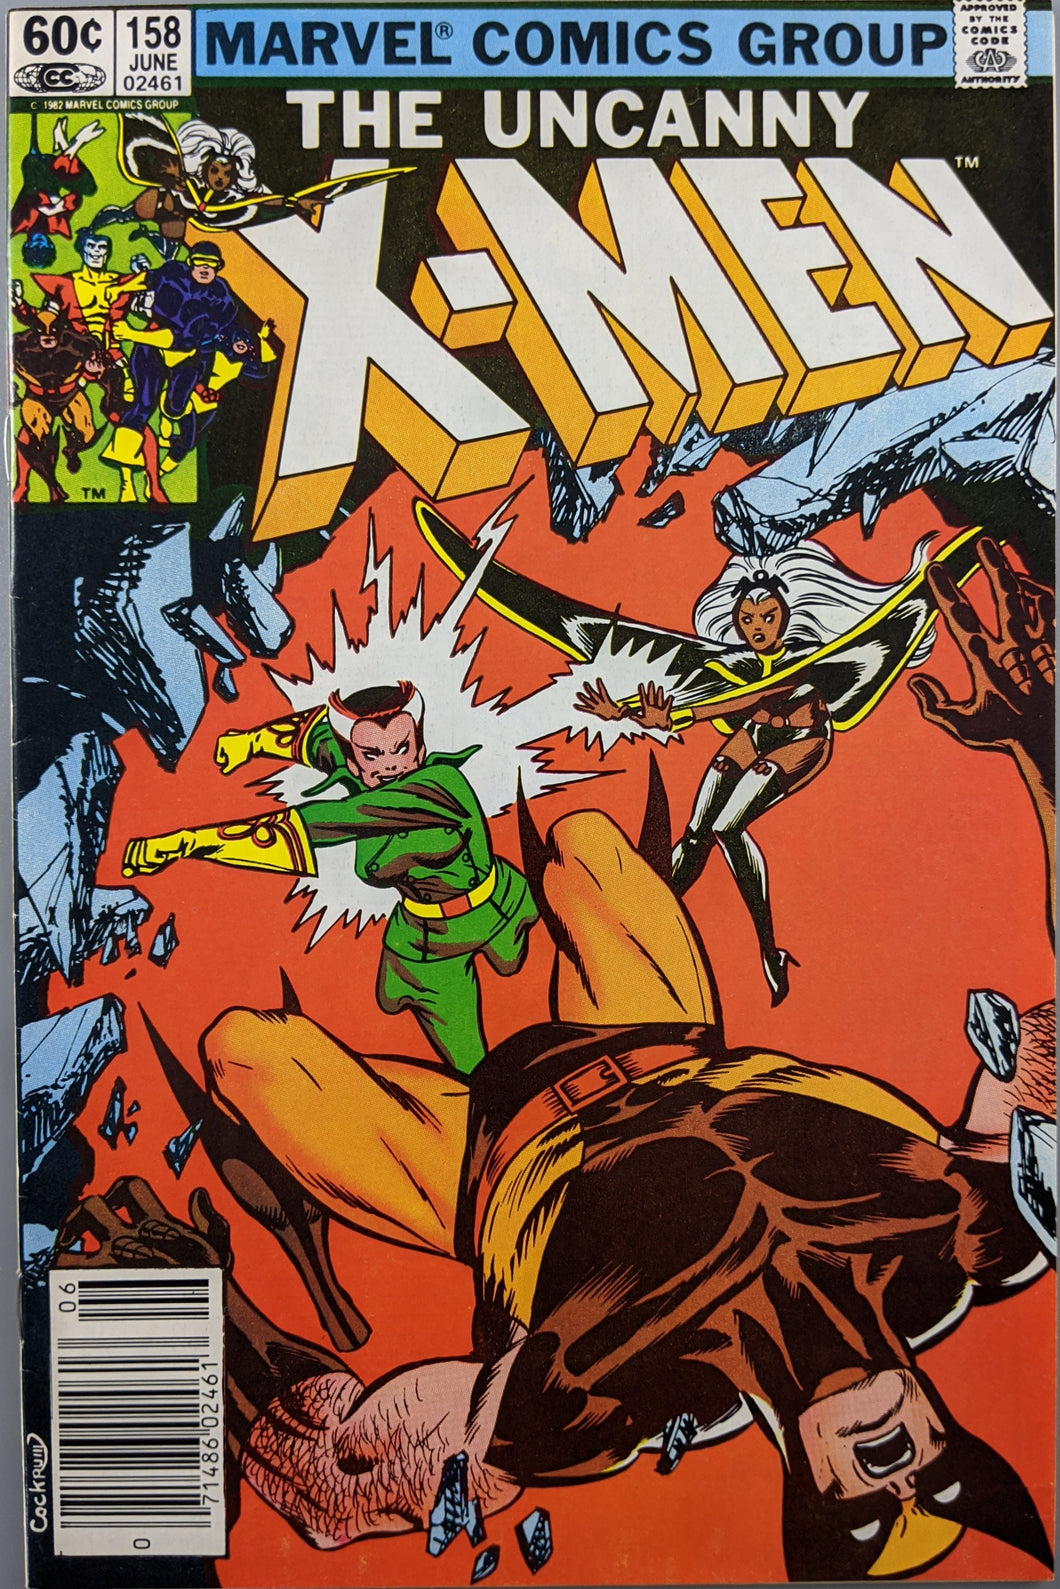 Uncanny X-Men #158 Comic Book Cover Art